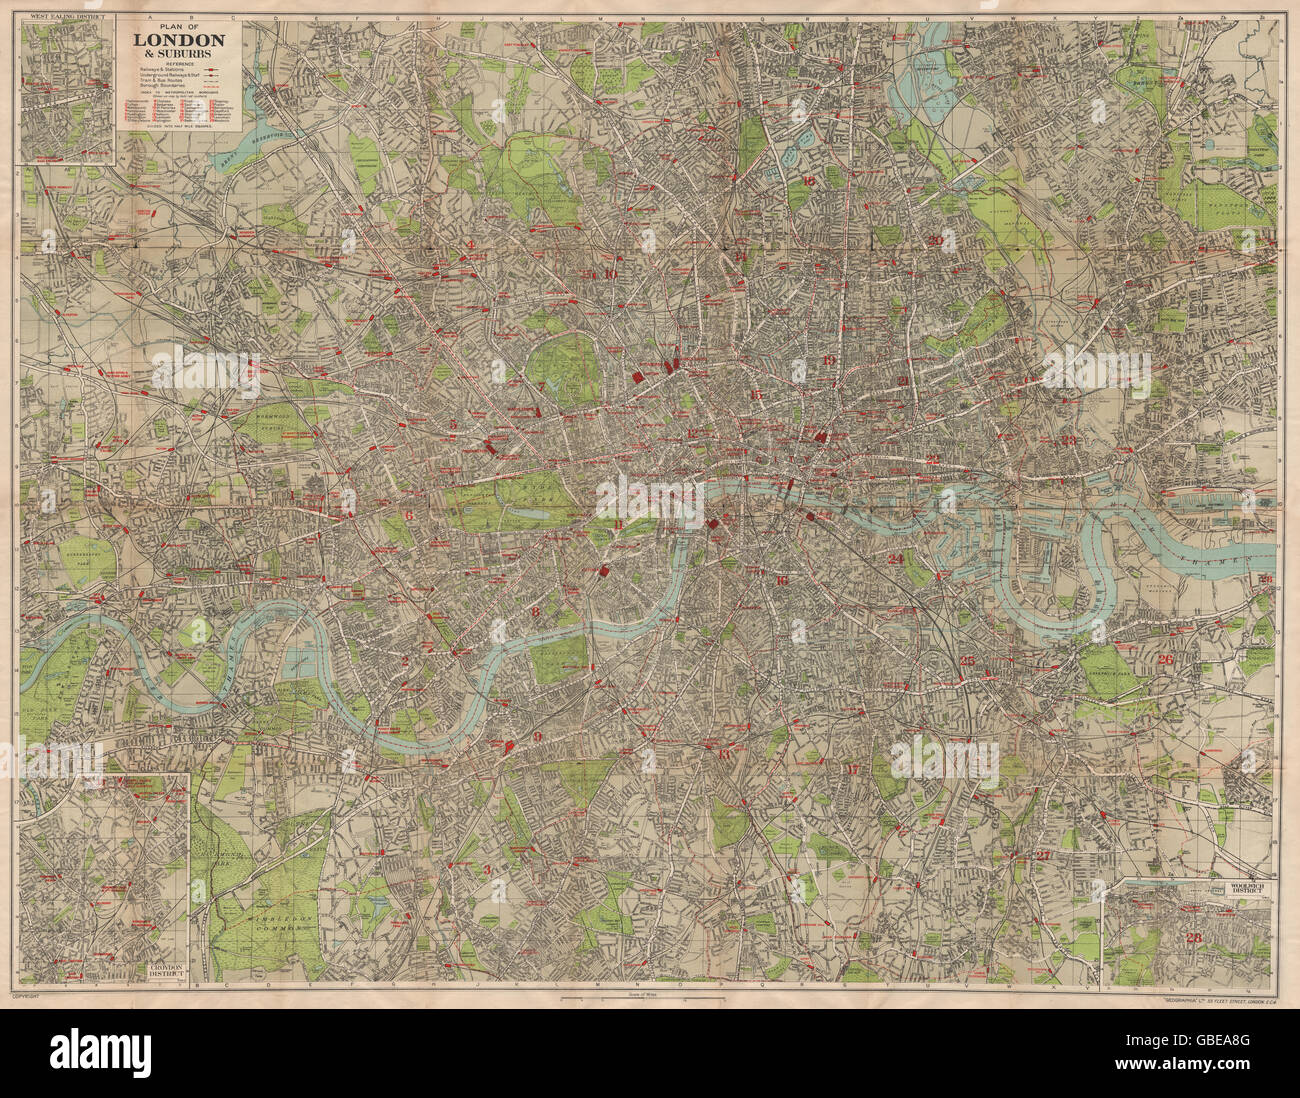 LONDON: Rohr unterirdischen Bahnhöfen Busverkehr. GROß. GEOGRAPHIA, c1929 Karte Stockfoto